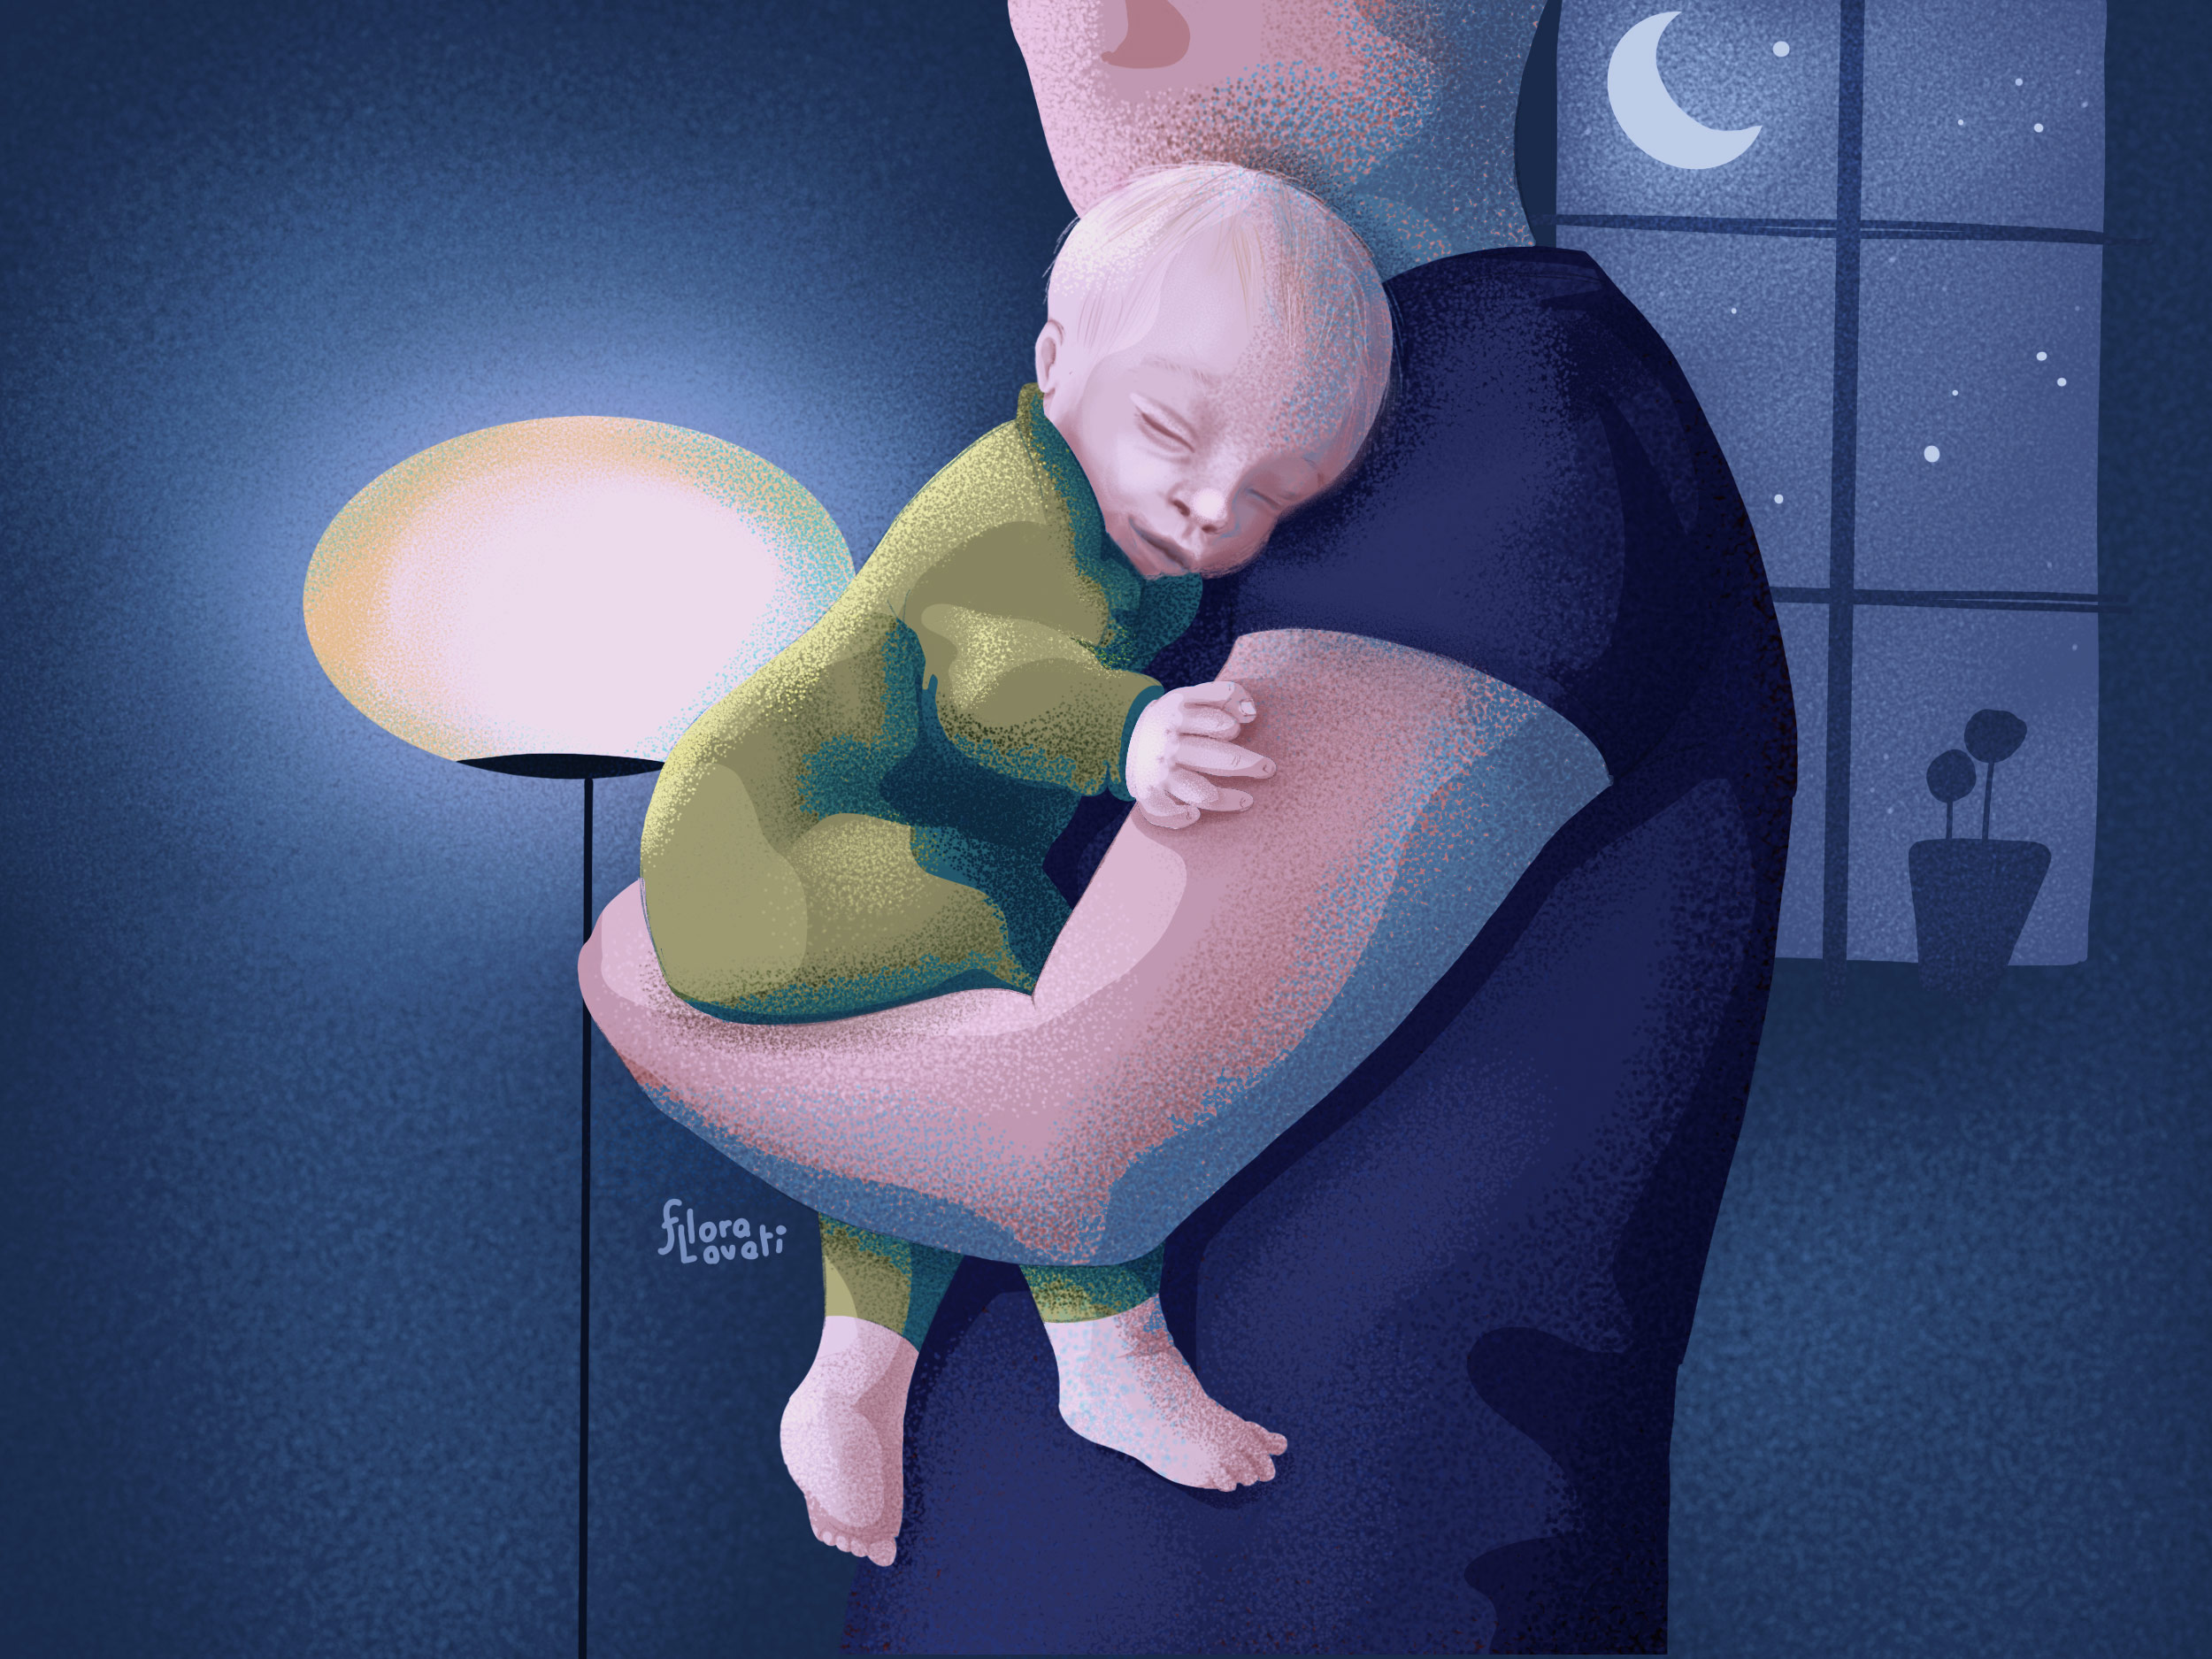 Illustrazione di un papà che tiene in braccio il suo bambino, durante la notte, camminando per la stanza.